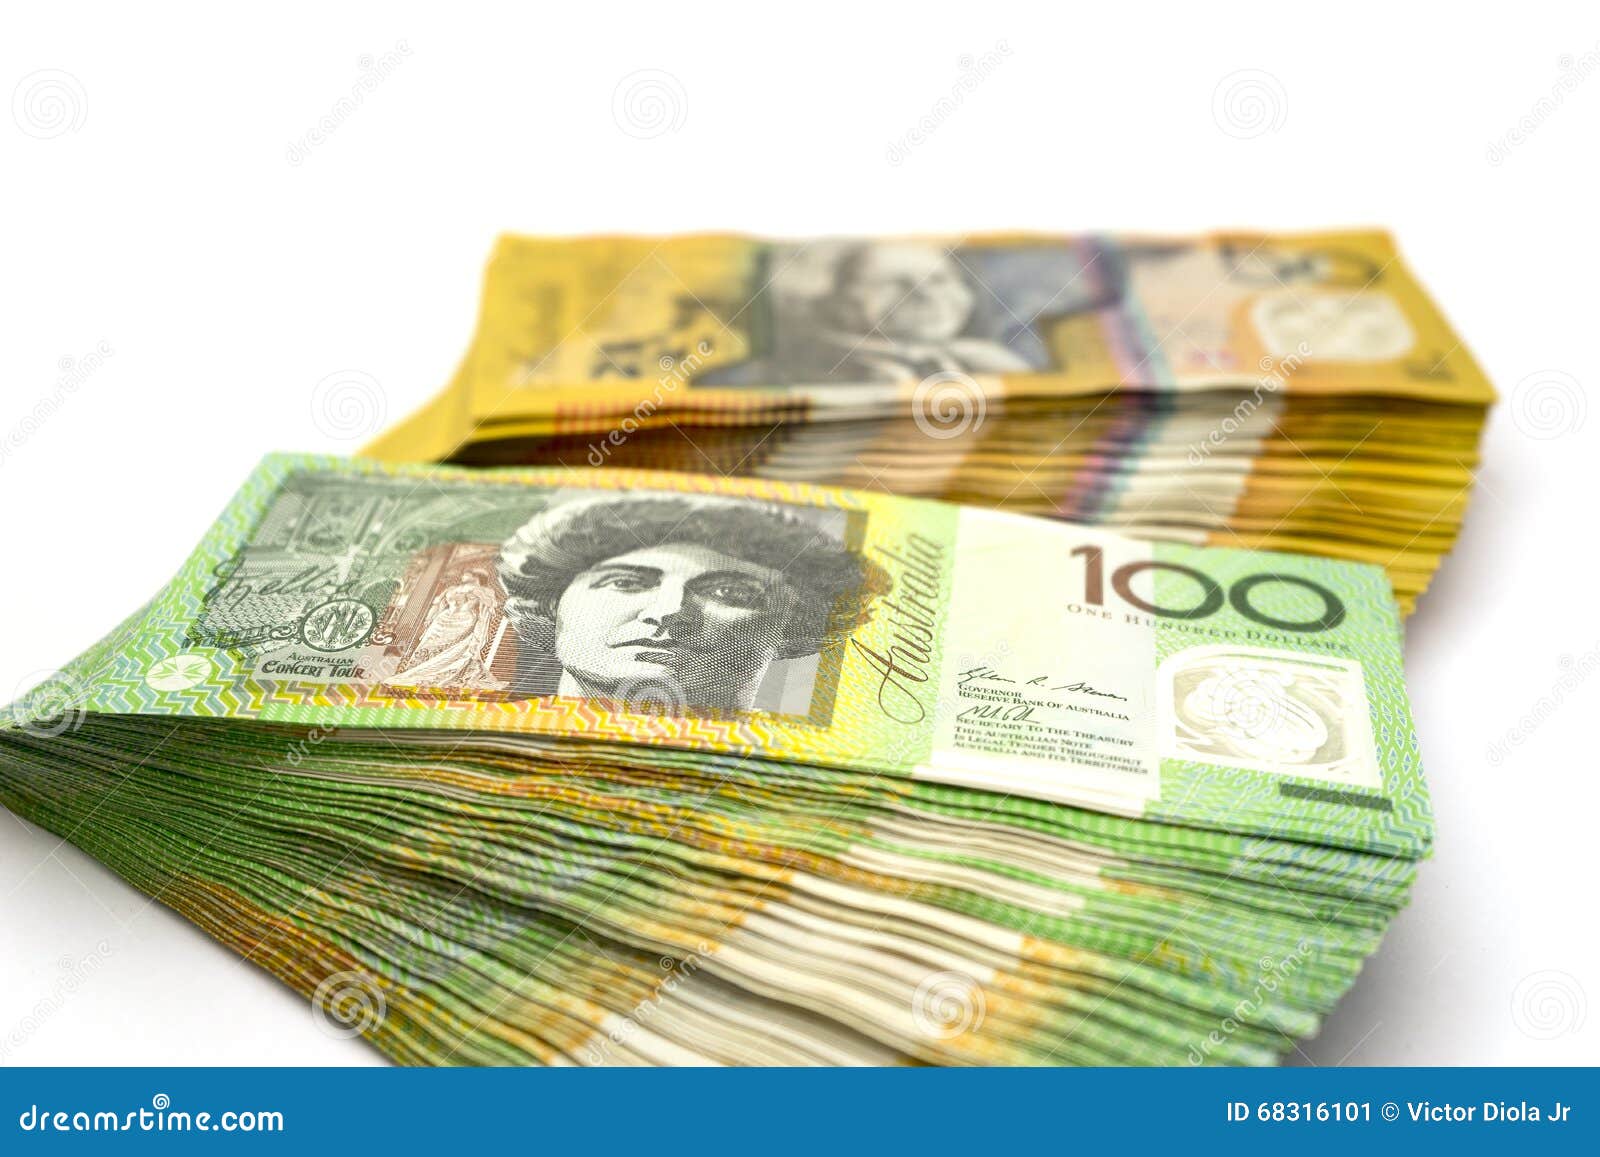 澳大利亚的货币符号是什么-货币符号_补肾参考网